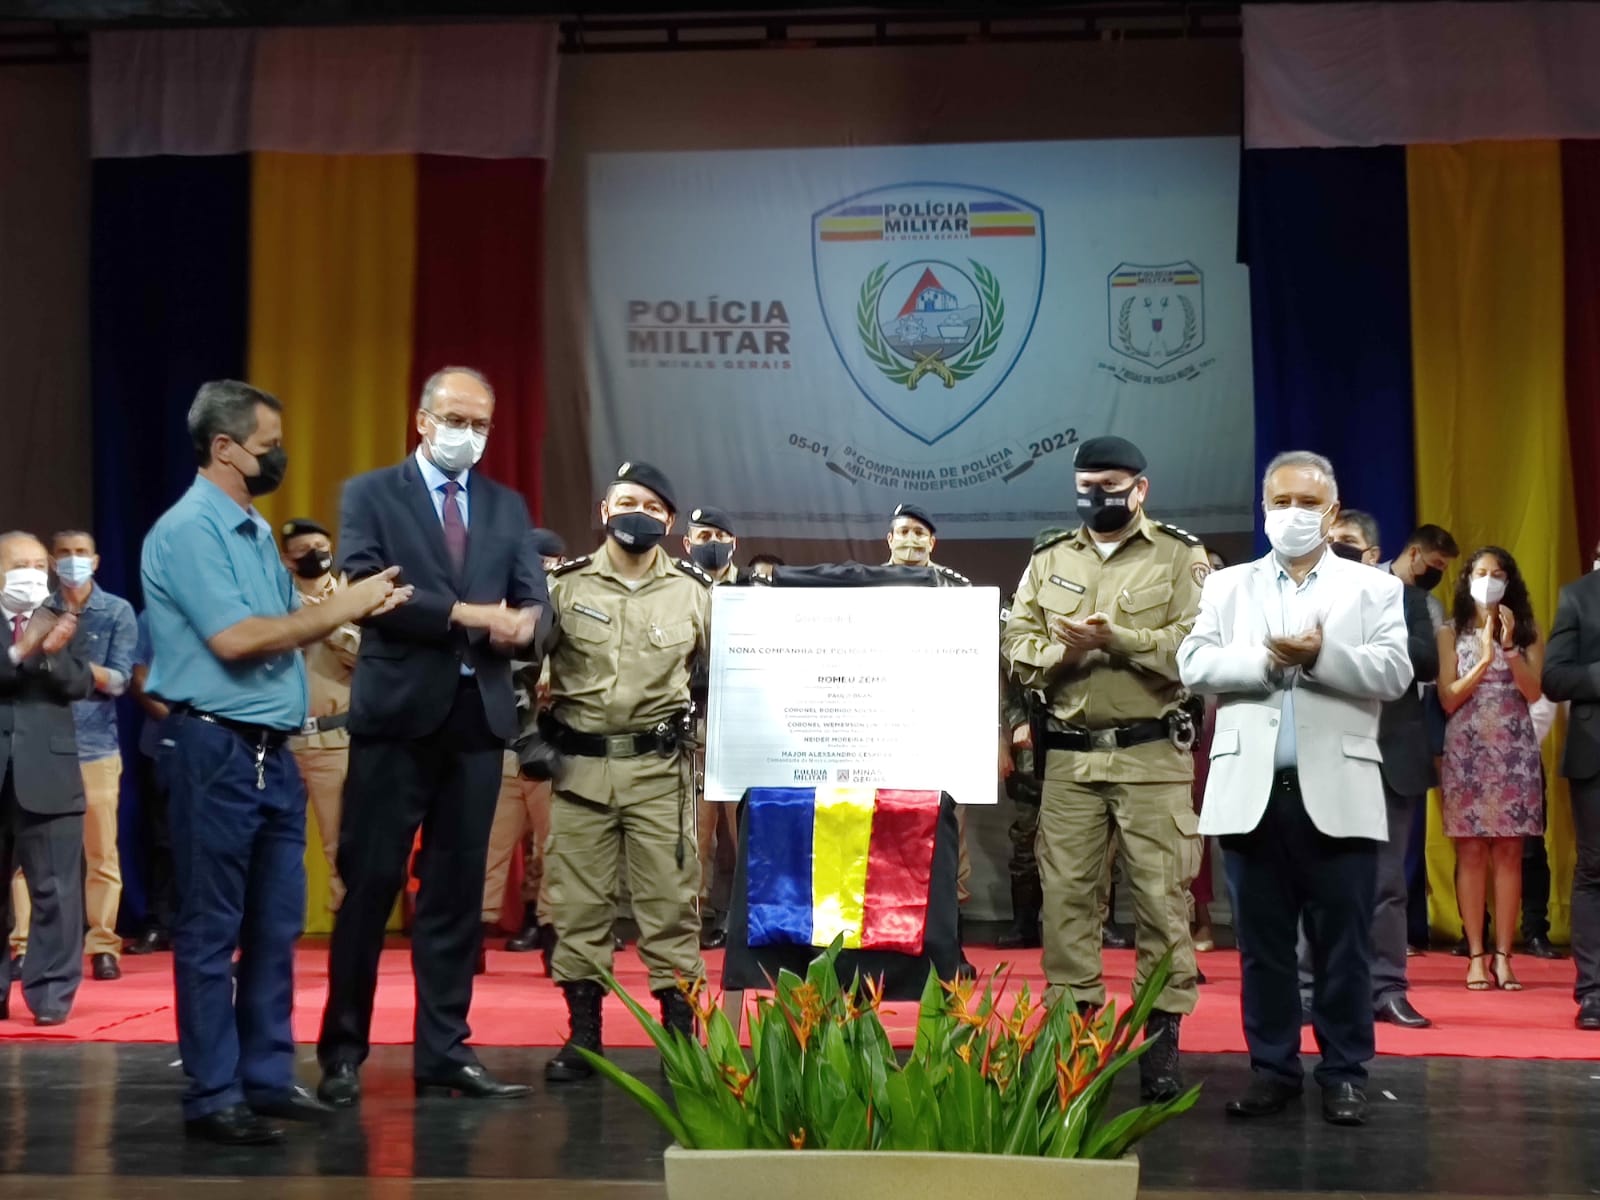 Com a presença de políticos, Polícia Militar realiza solenidade de elevação da 9ª Cia PM Ind. de Itaúna